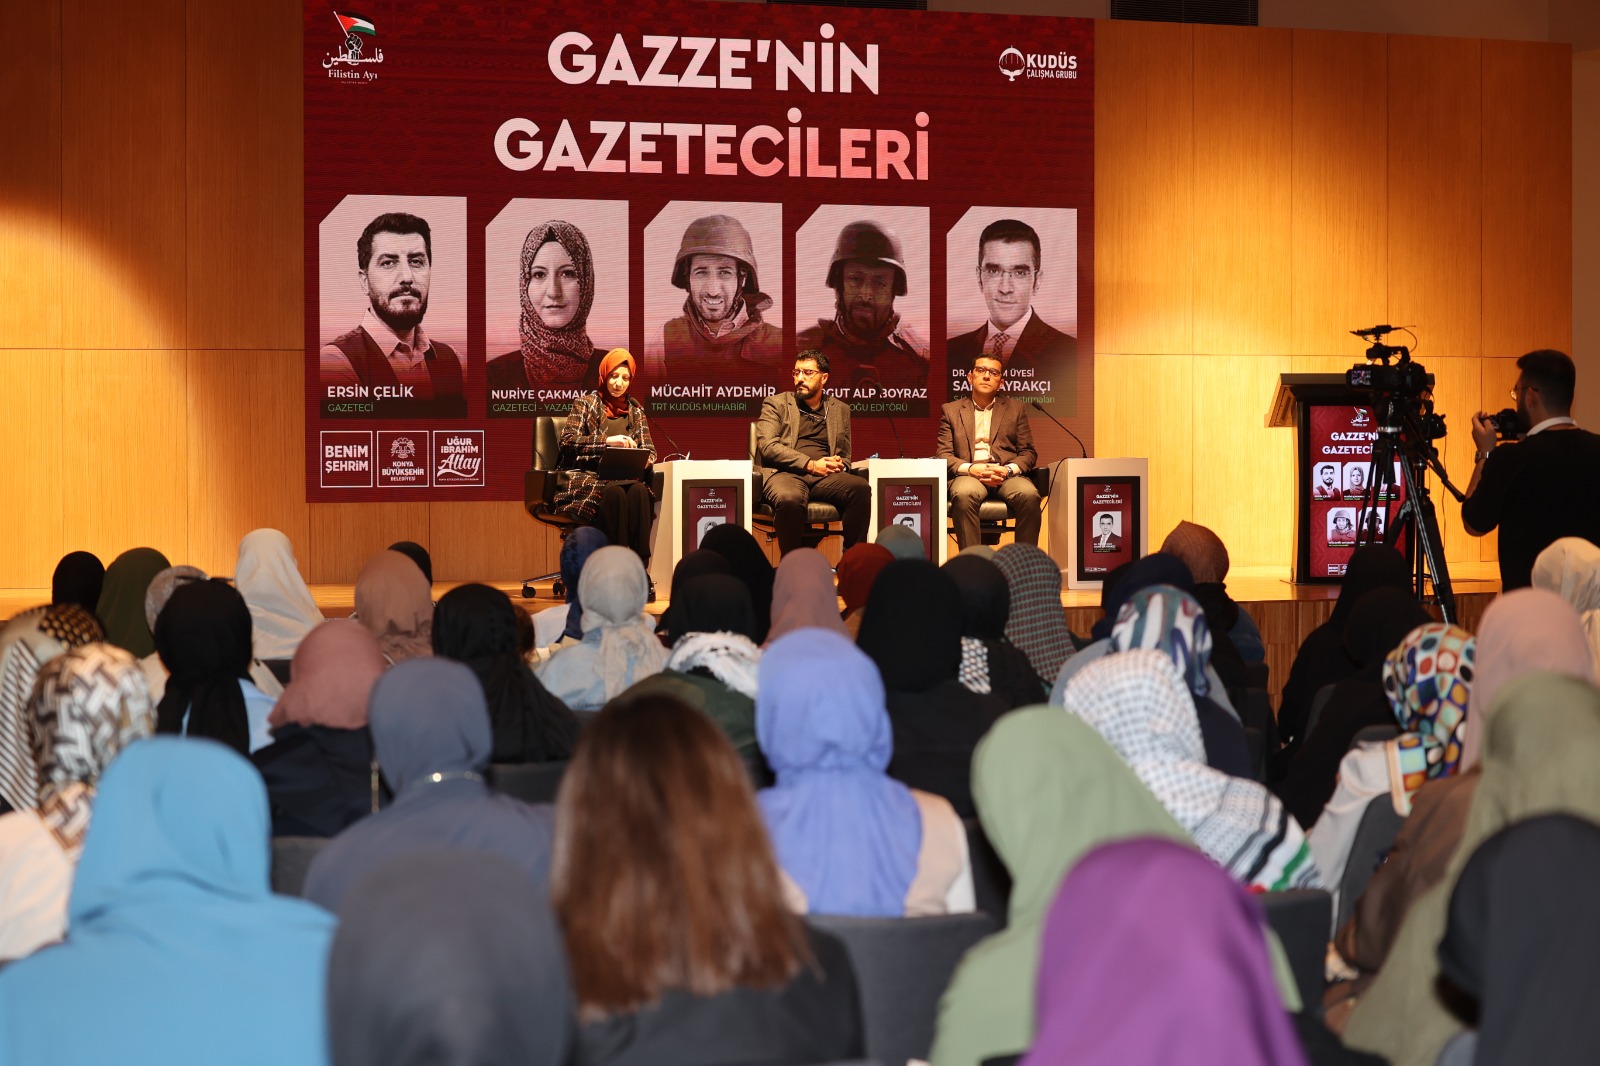 Kudüs Çalışma Grubu'ndan “Gazze’nin Gazetecileri” konferansı